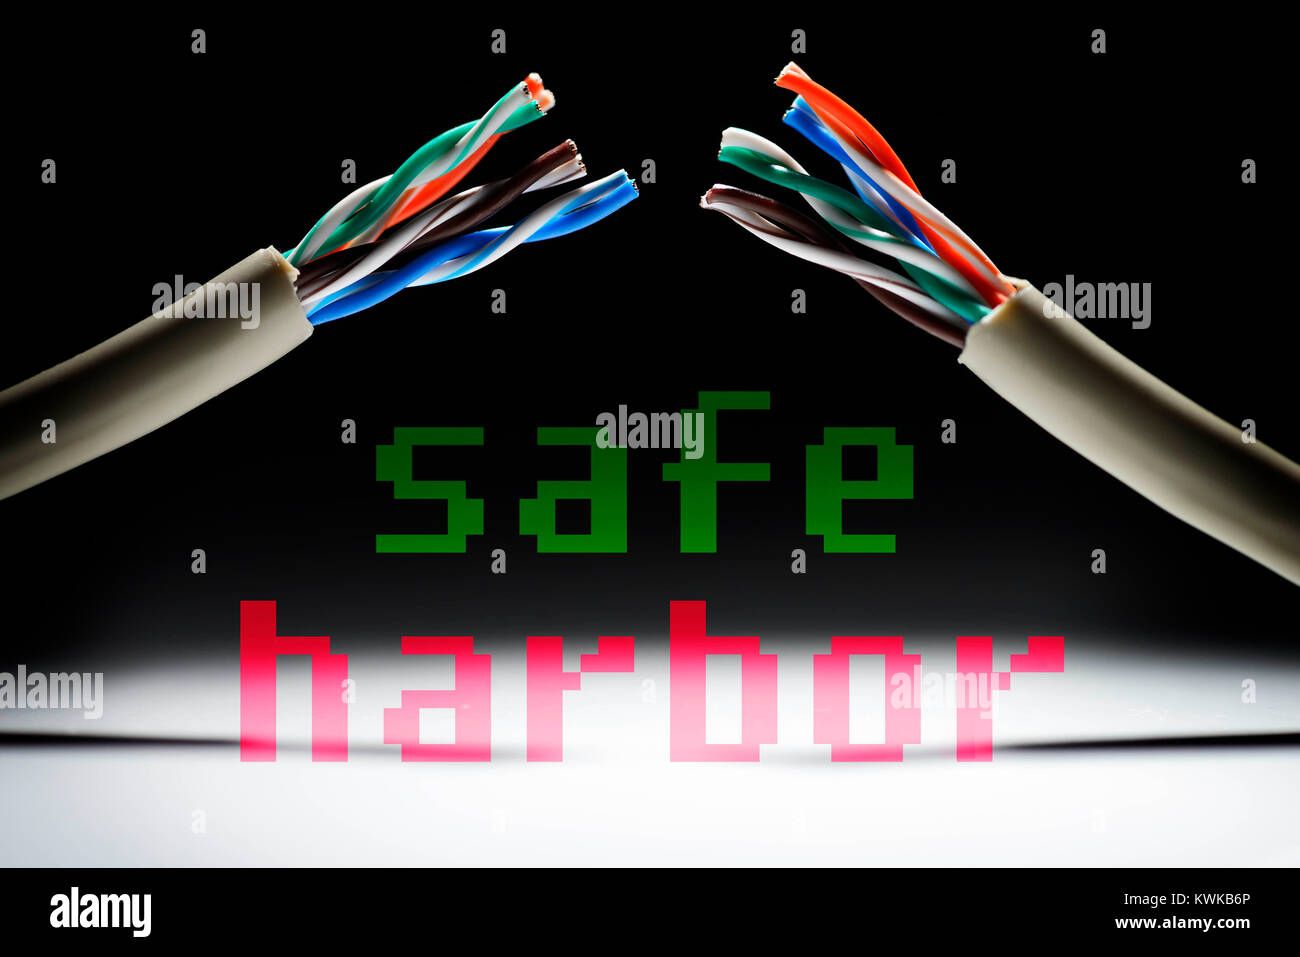 Tagliare il cavo Internet, protezione dei dati accordo Safe Harbor non valido, Durchgeschnittenes Internetkabel, Datenschutzabkommen Safe Harbor ung?ltig Foto Stock